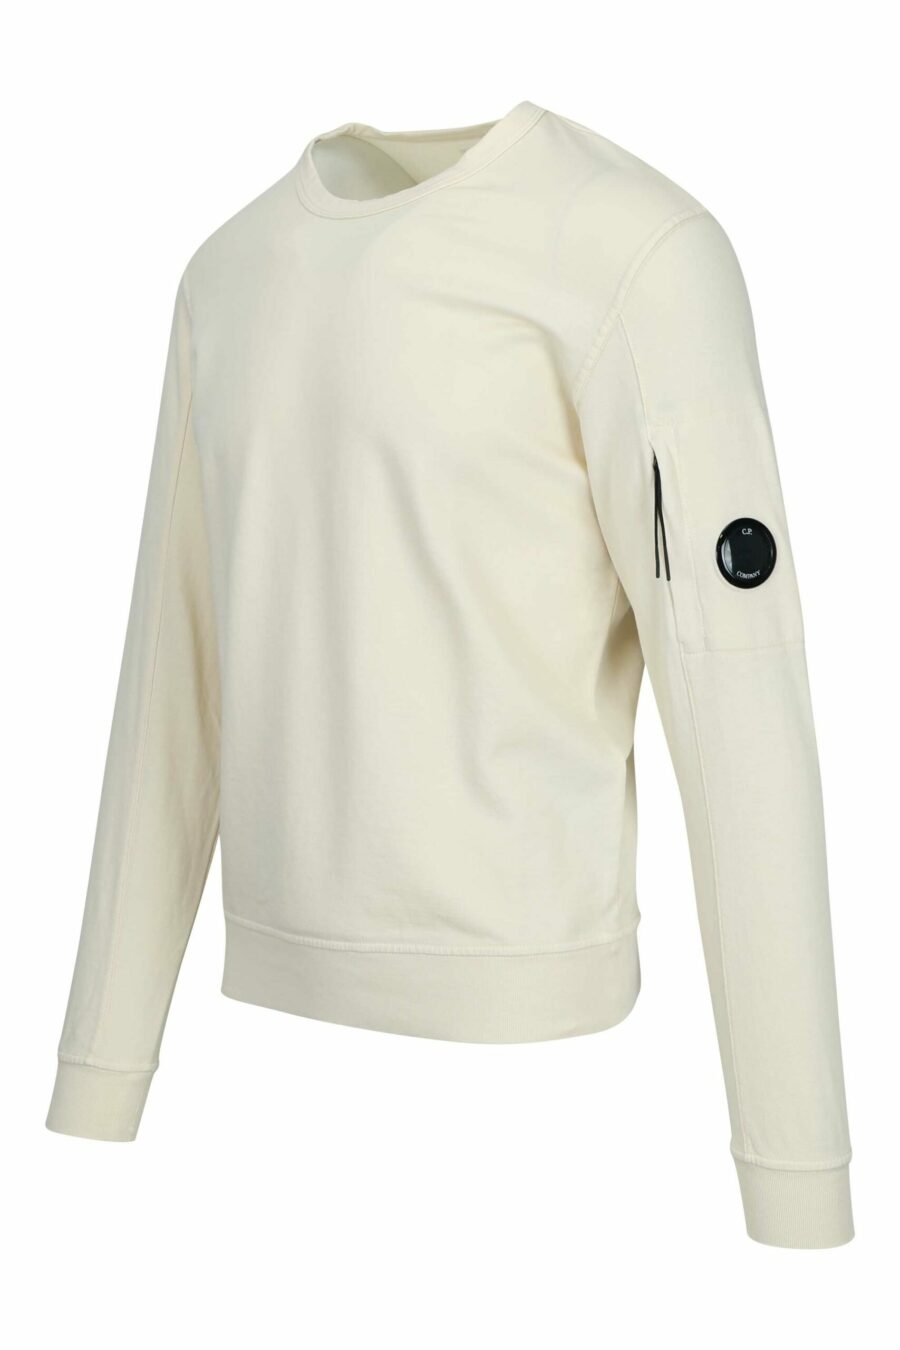 Beigefarbenes Sweatshirt mit Tasche und Mini-Logo-Linse - 7620943680911 1 skaliert